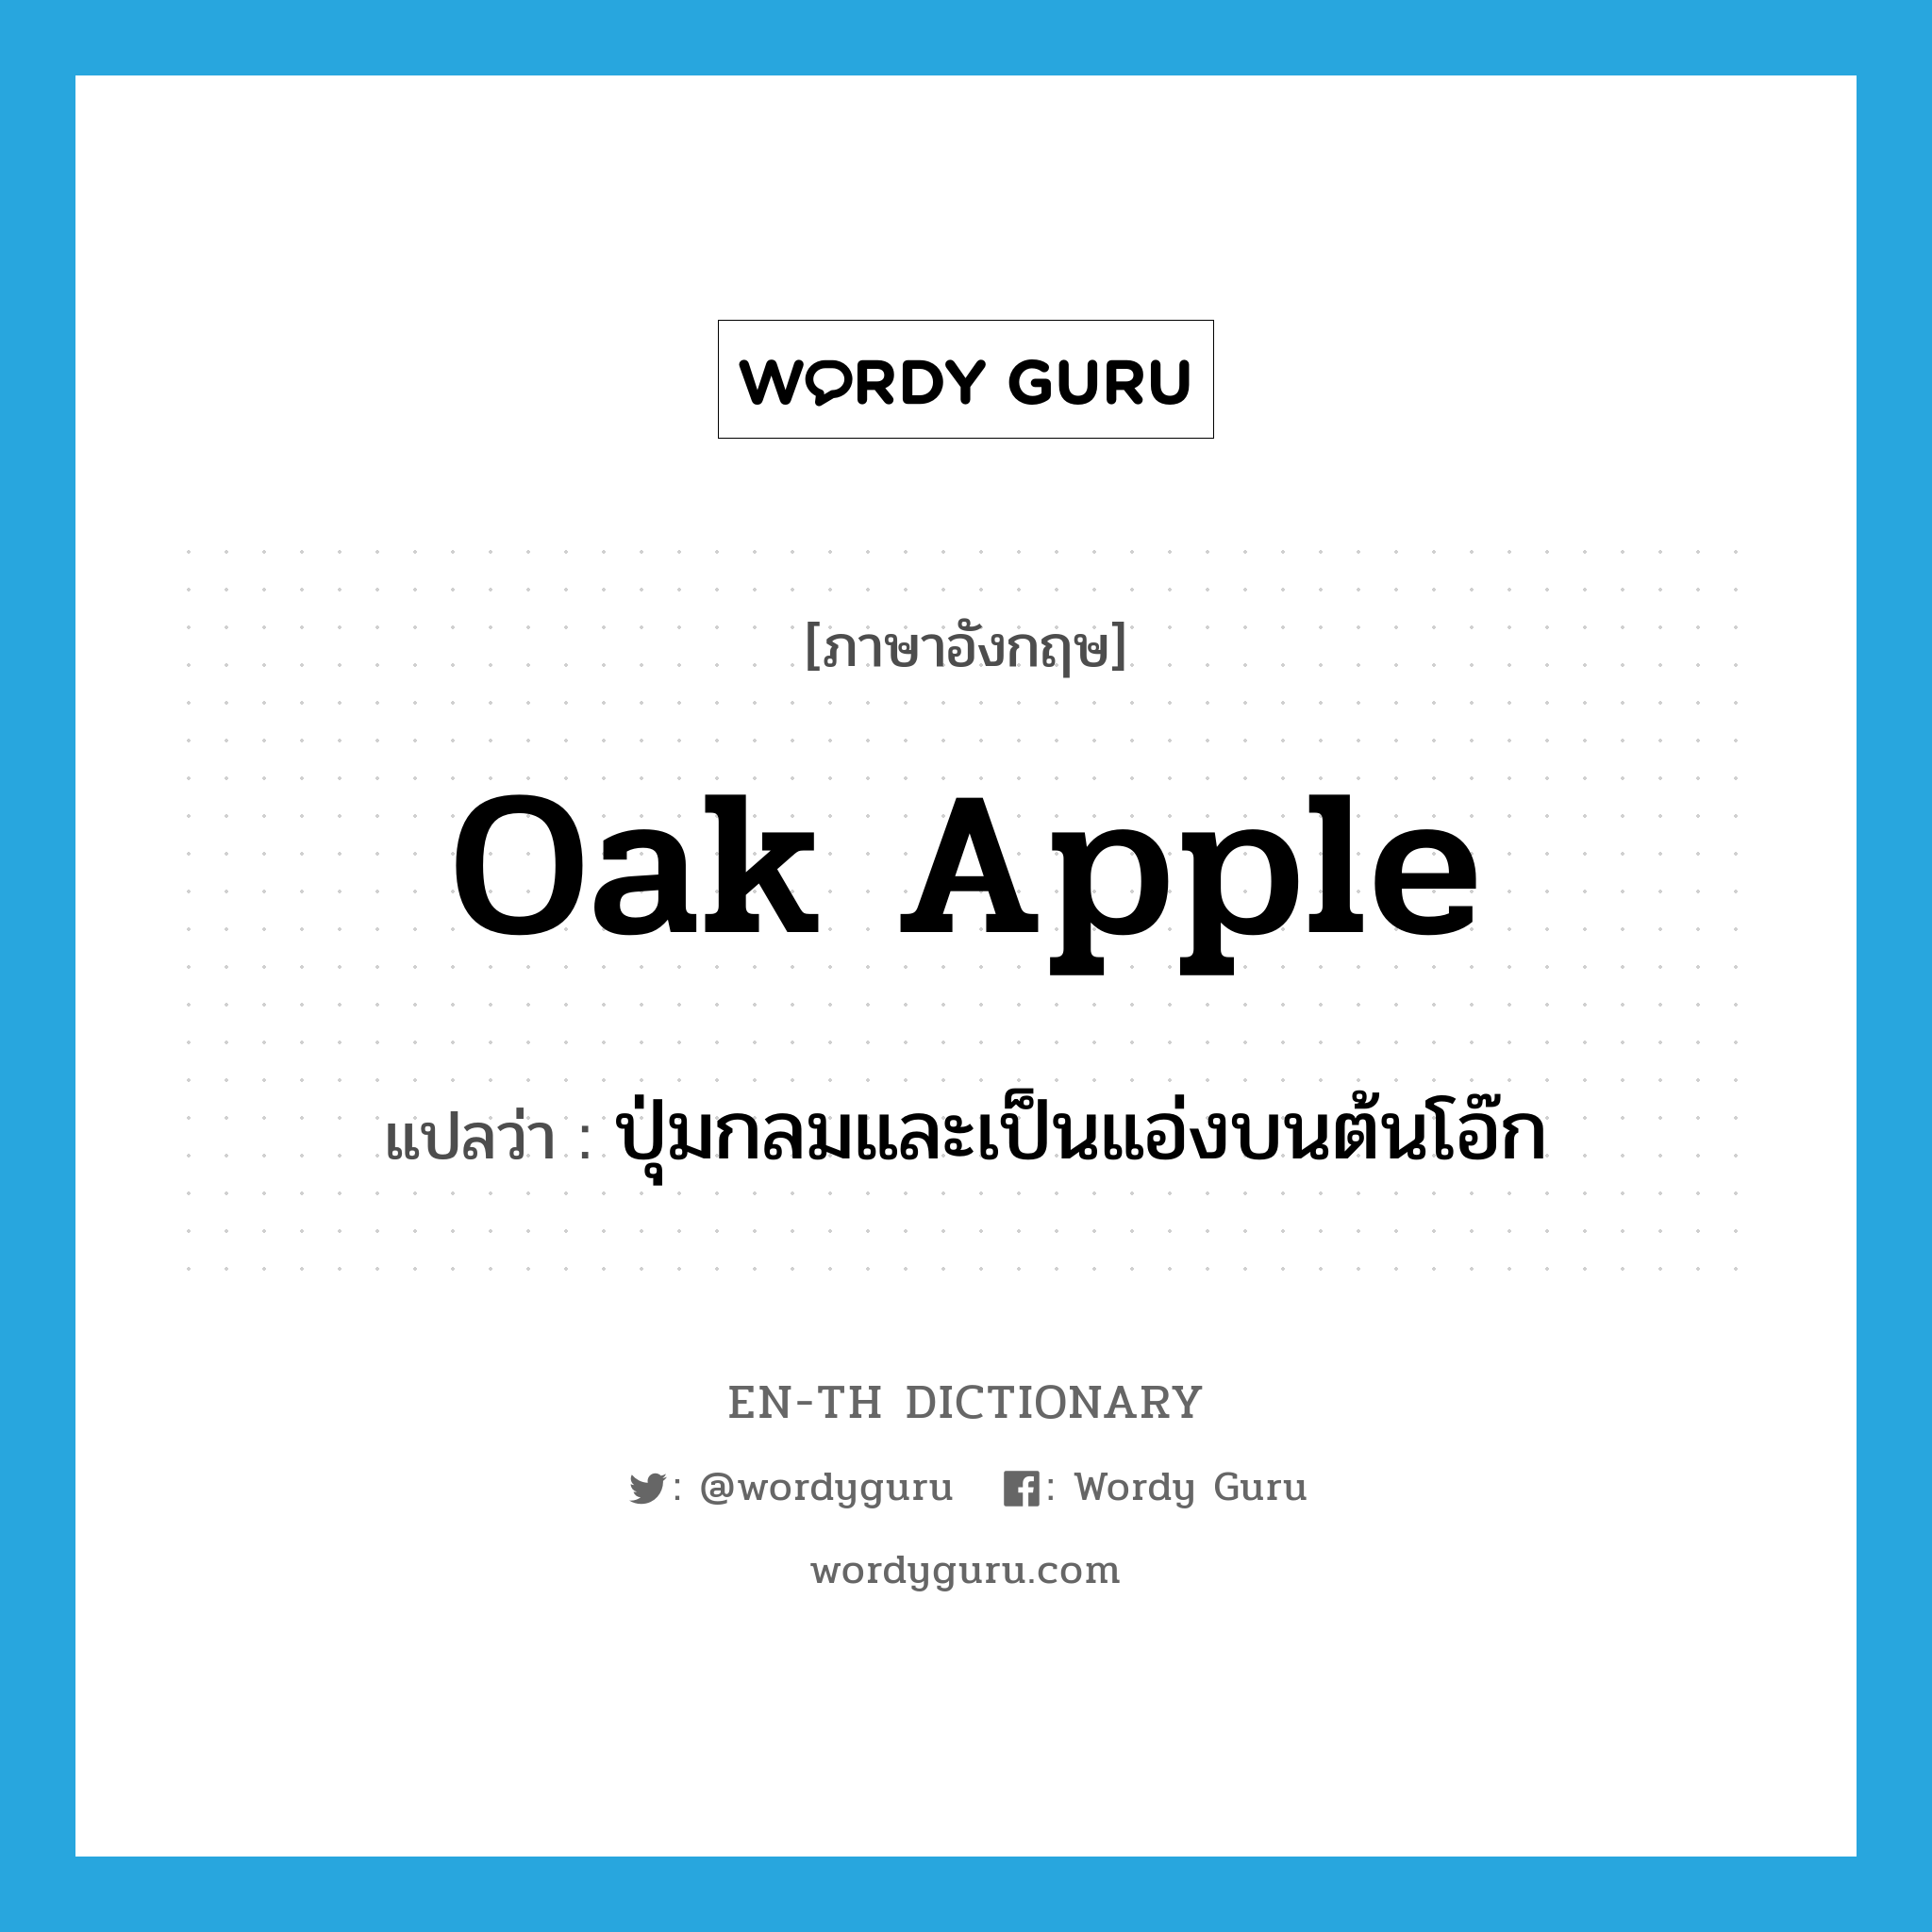 oak apple แปลว่า?, คำศัพท์ภาษาอังกฤษ oak apple แปลว่า ปุ่มกลมและเป็นแอ่งบนต้นโอ๊ก ประเภท N หมวด N